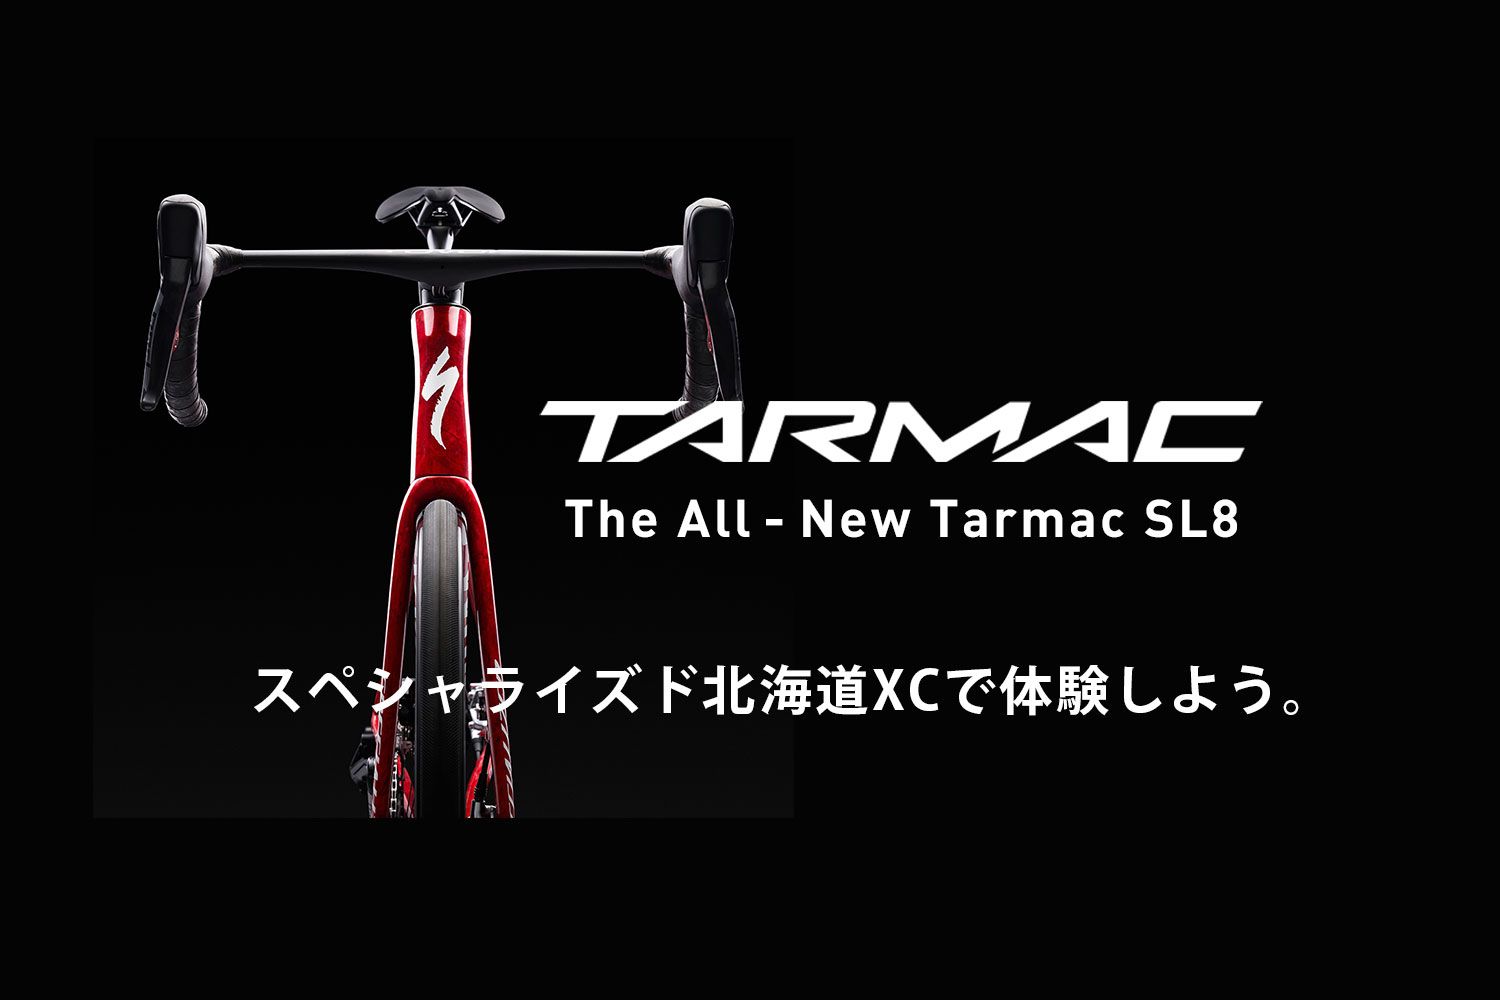 すべてを征す一台。New Tarmac SL8をスペシャライズド 北海道XCで体験 